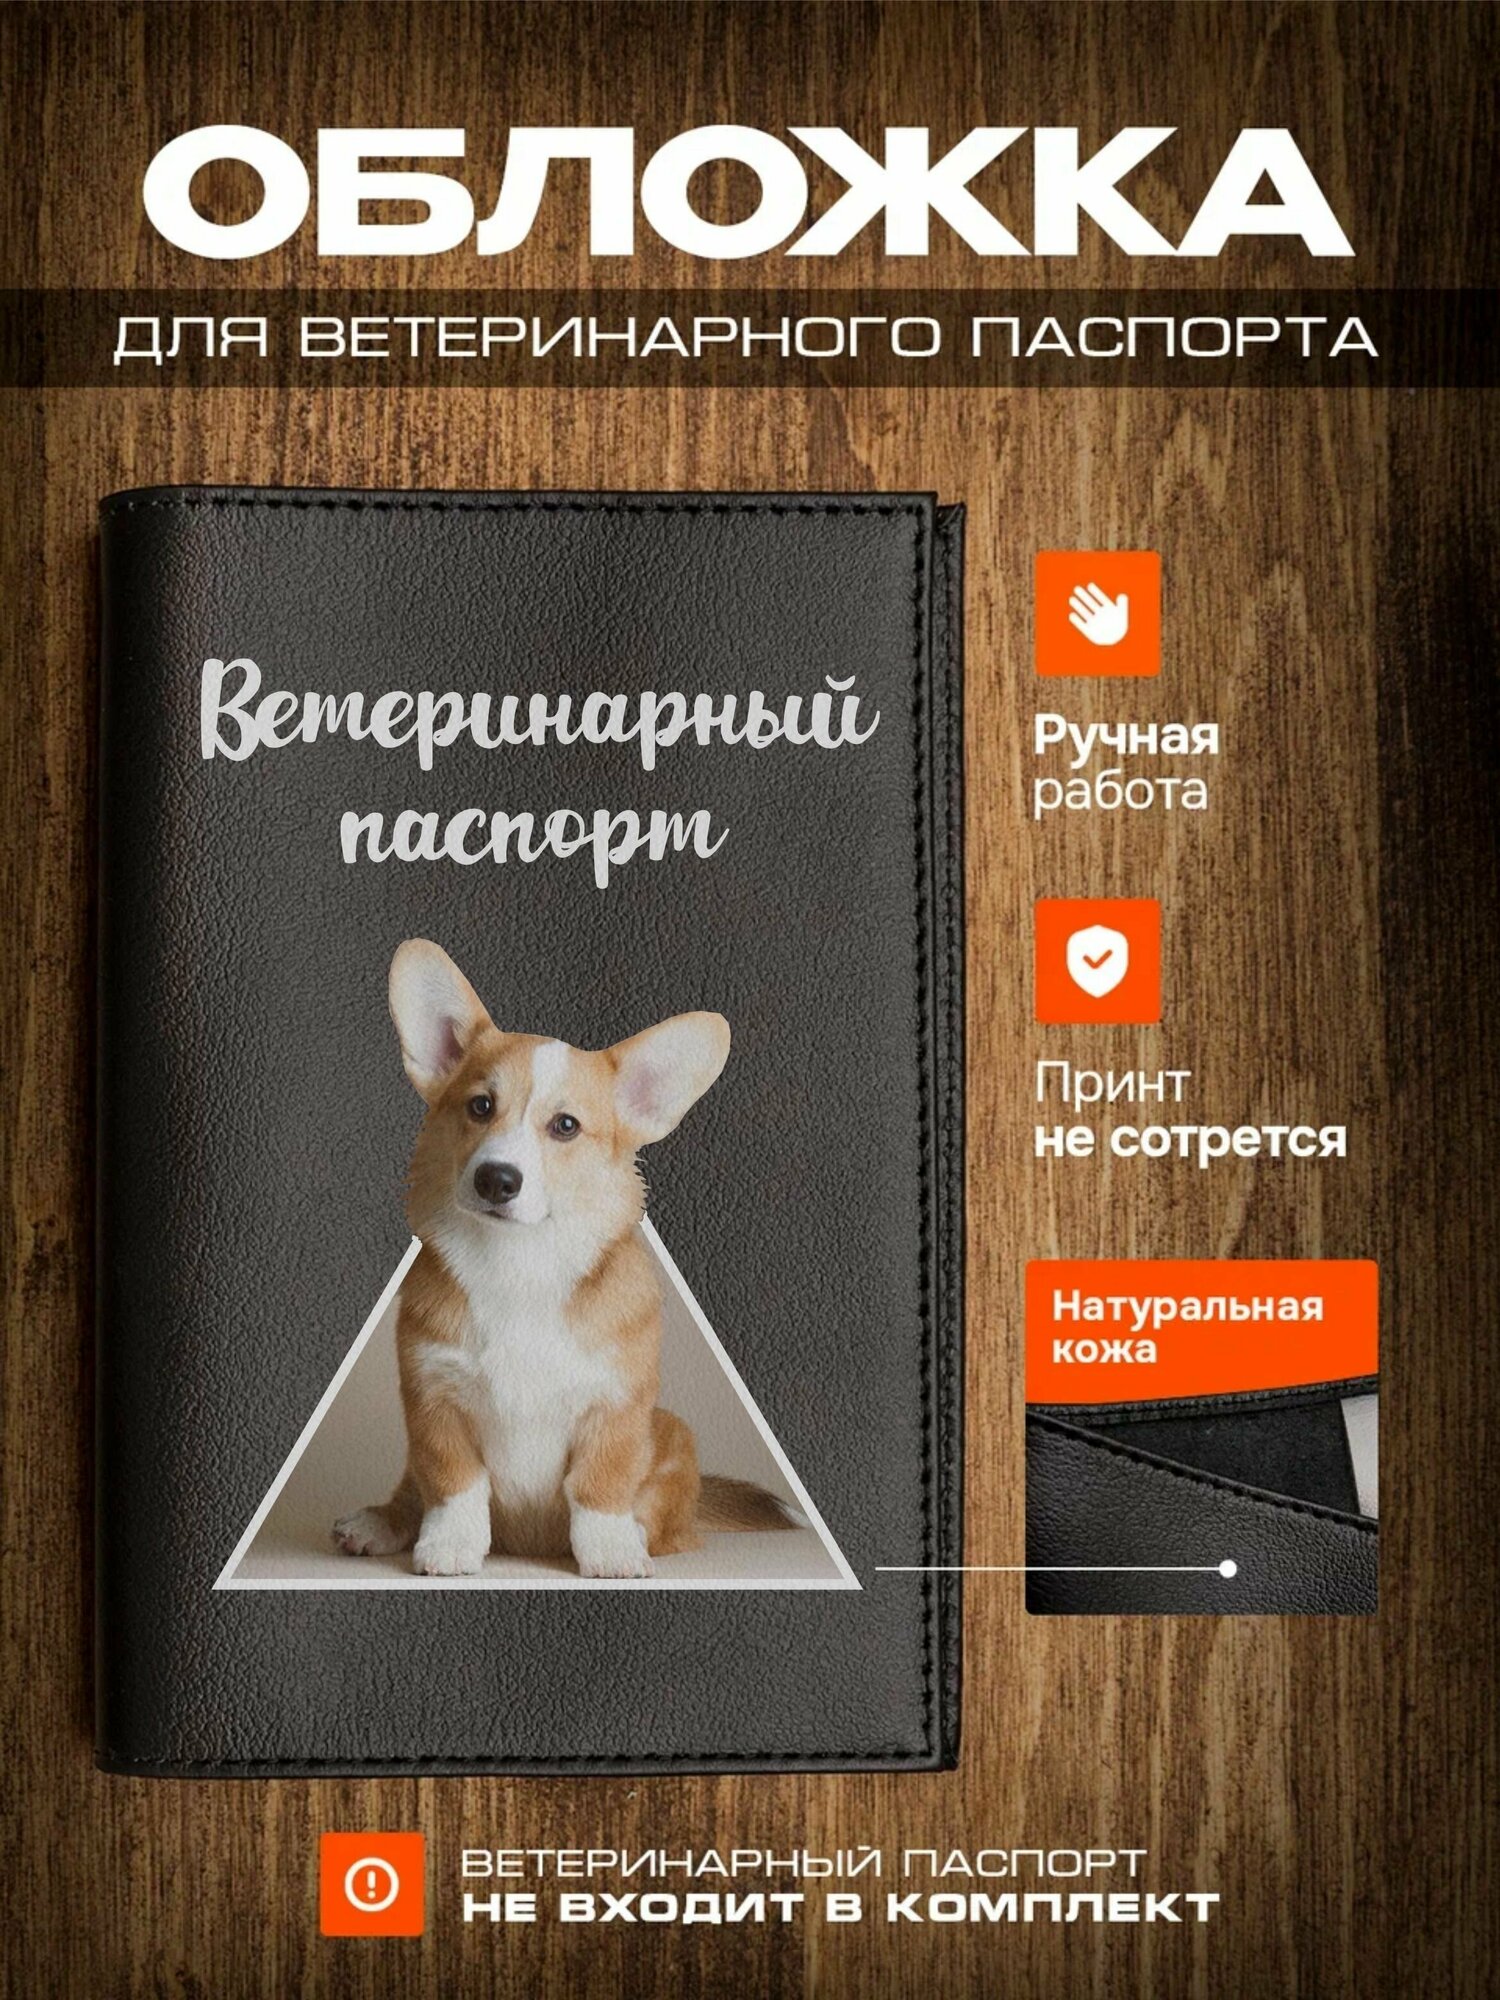 Обложка на ветеринарный паспорт для собак корги